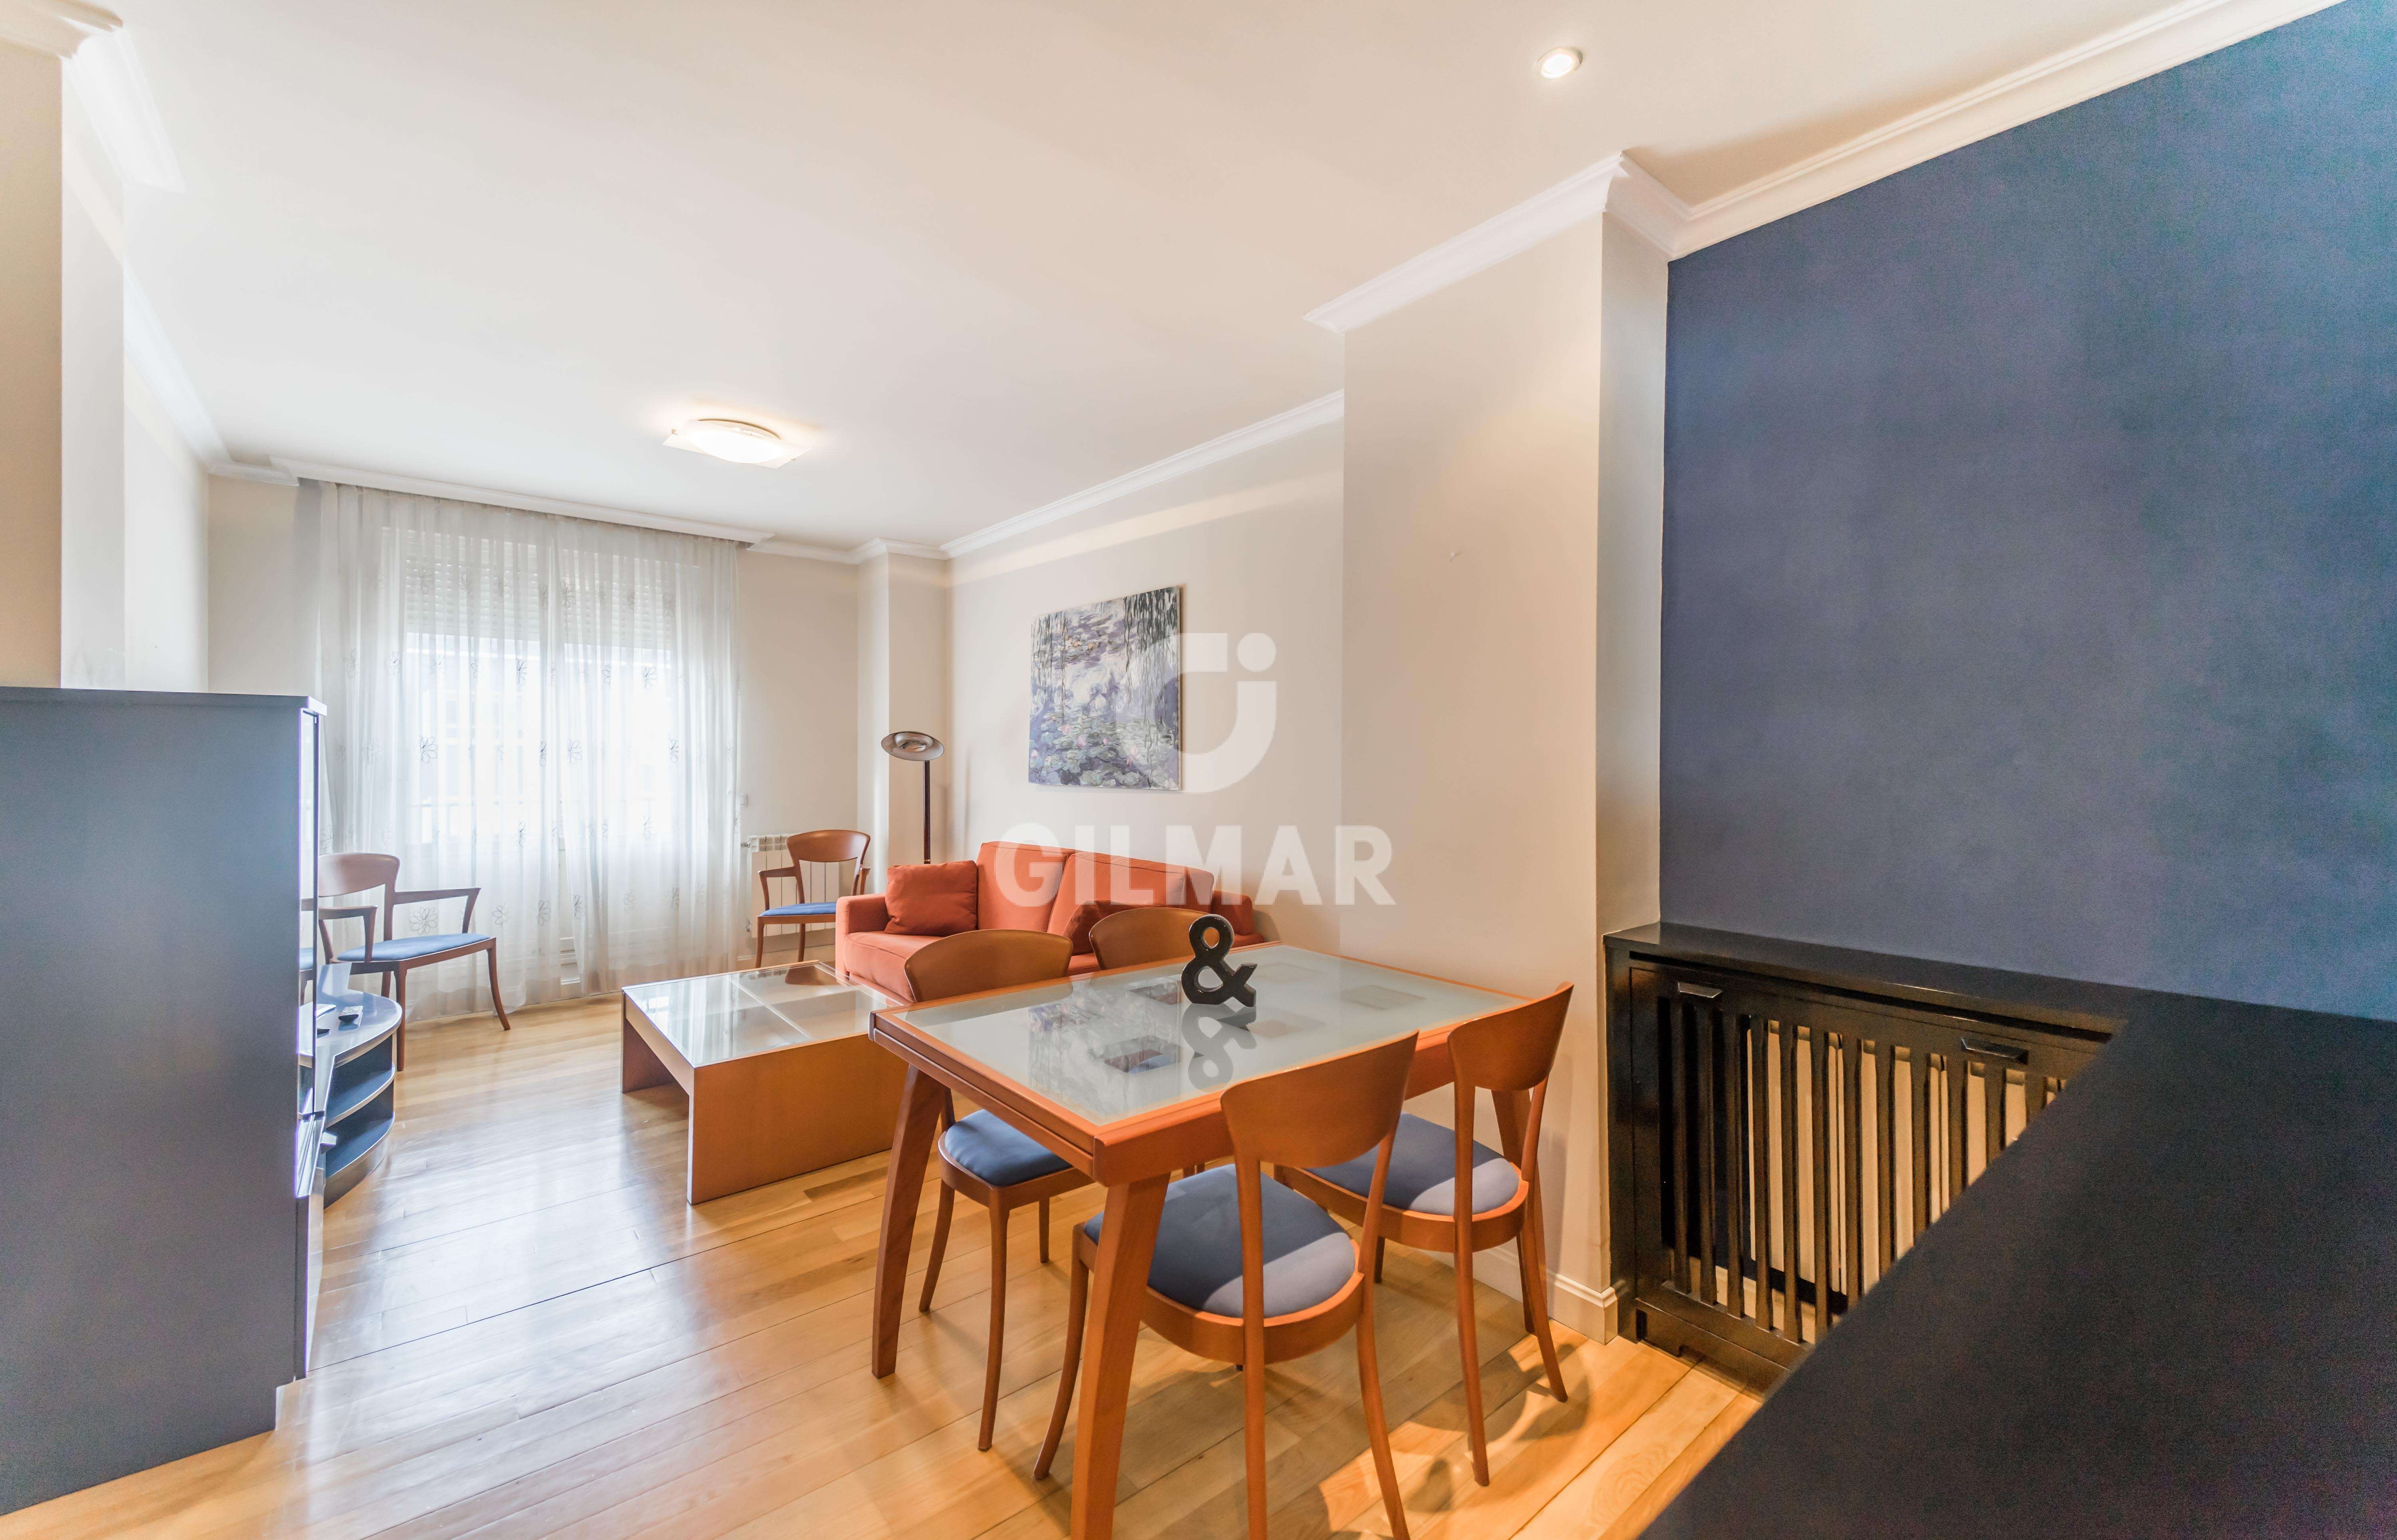 Apartamento en alquiler en Salamanca – Madrid | Gilmar Consulting